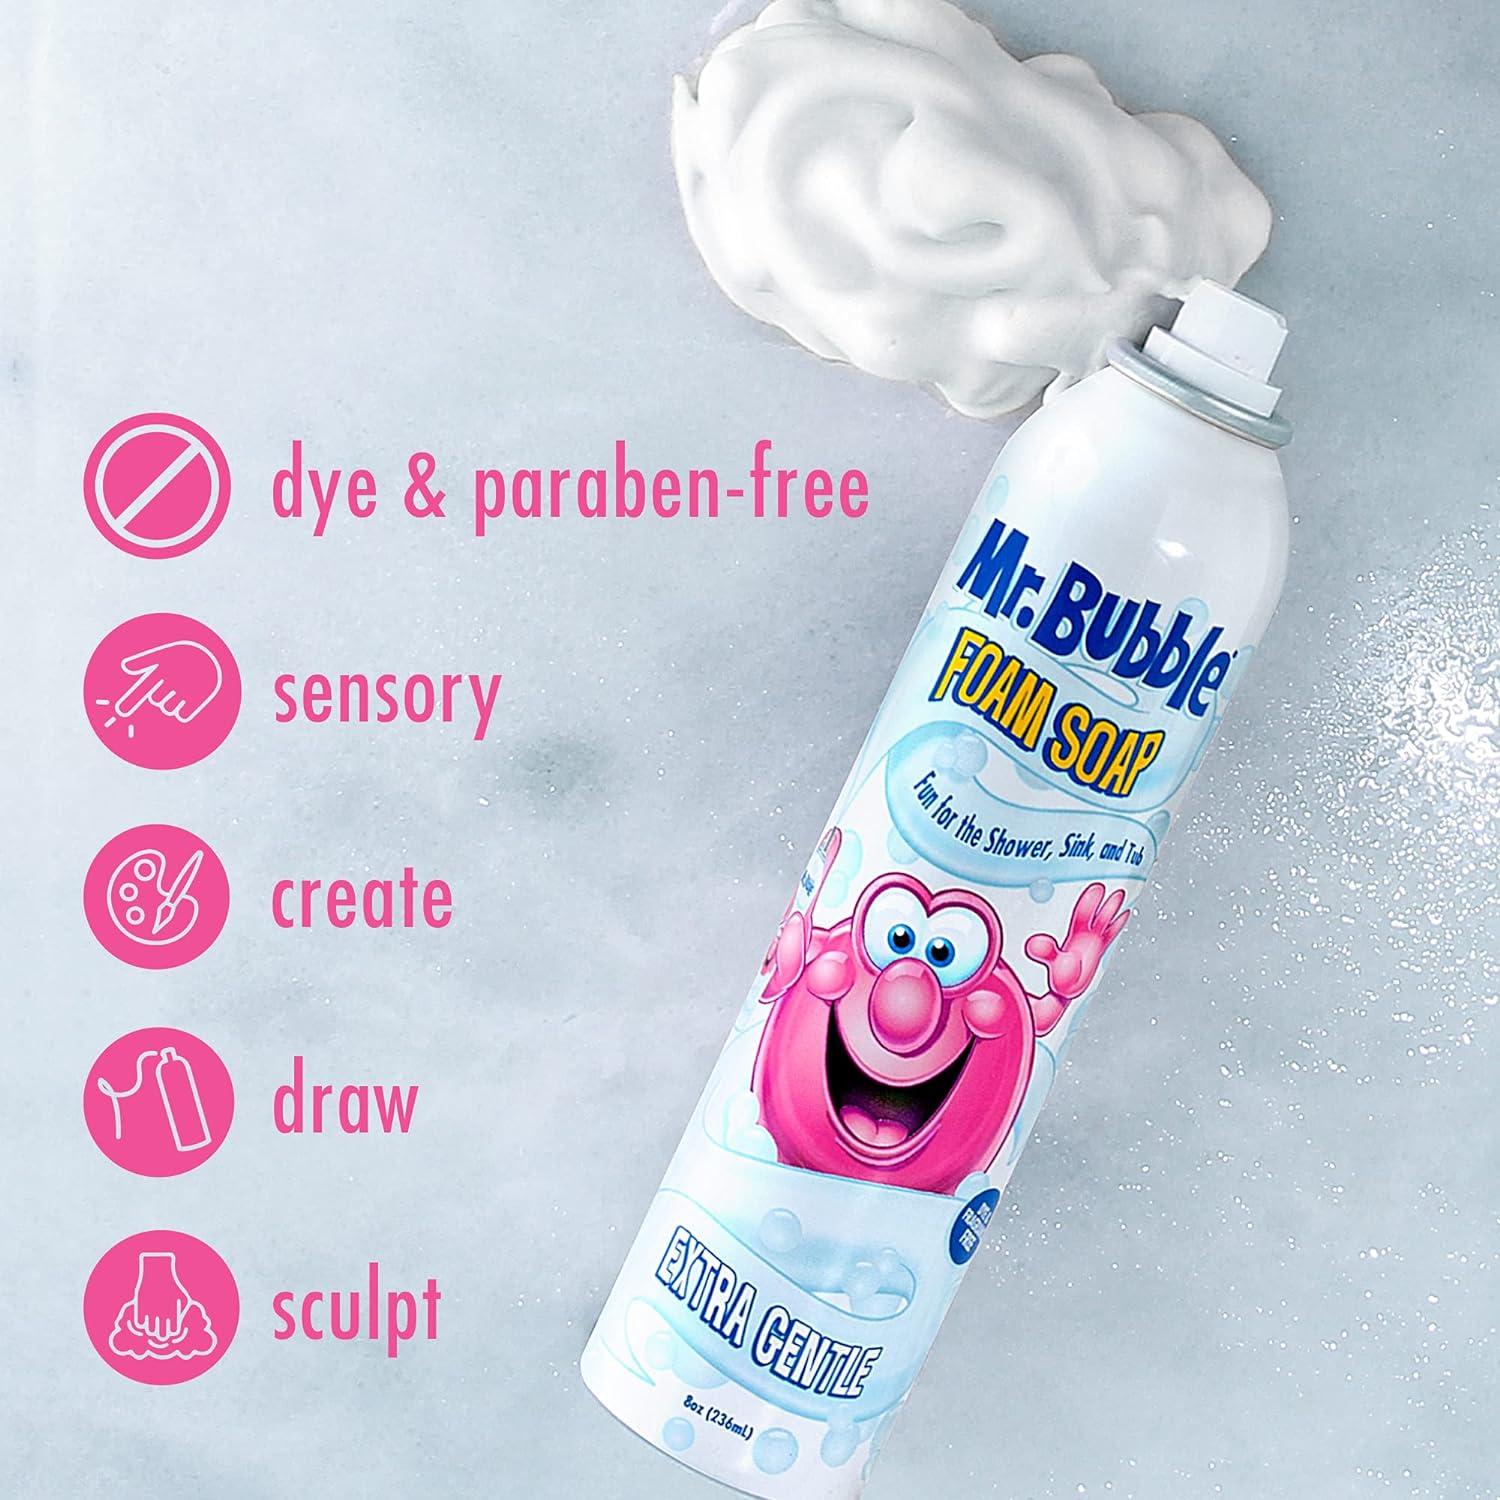  Mr. Bubble Extra Gentle Foam Soap - Fragrance Free